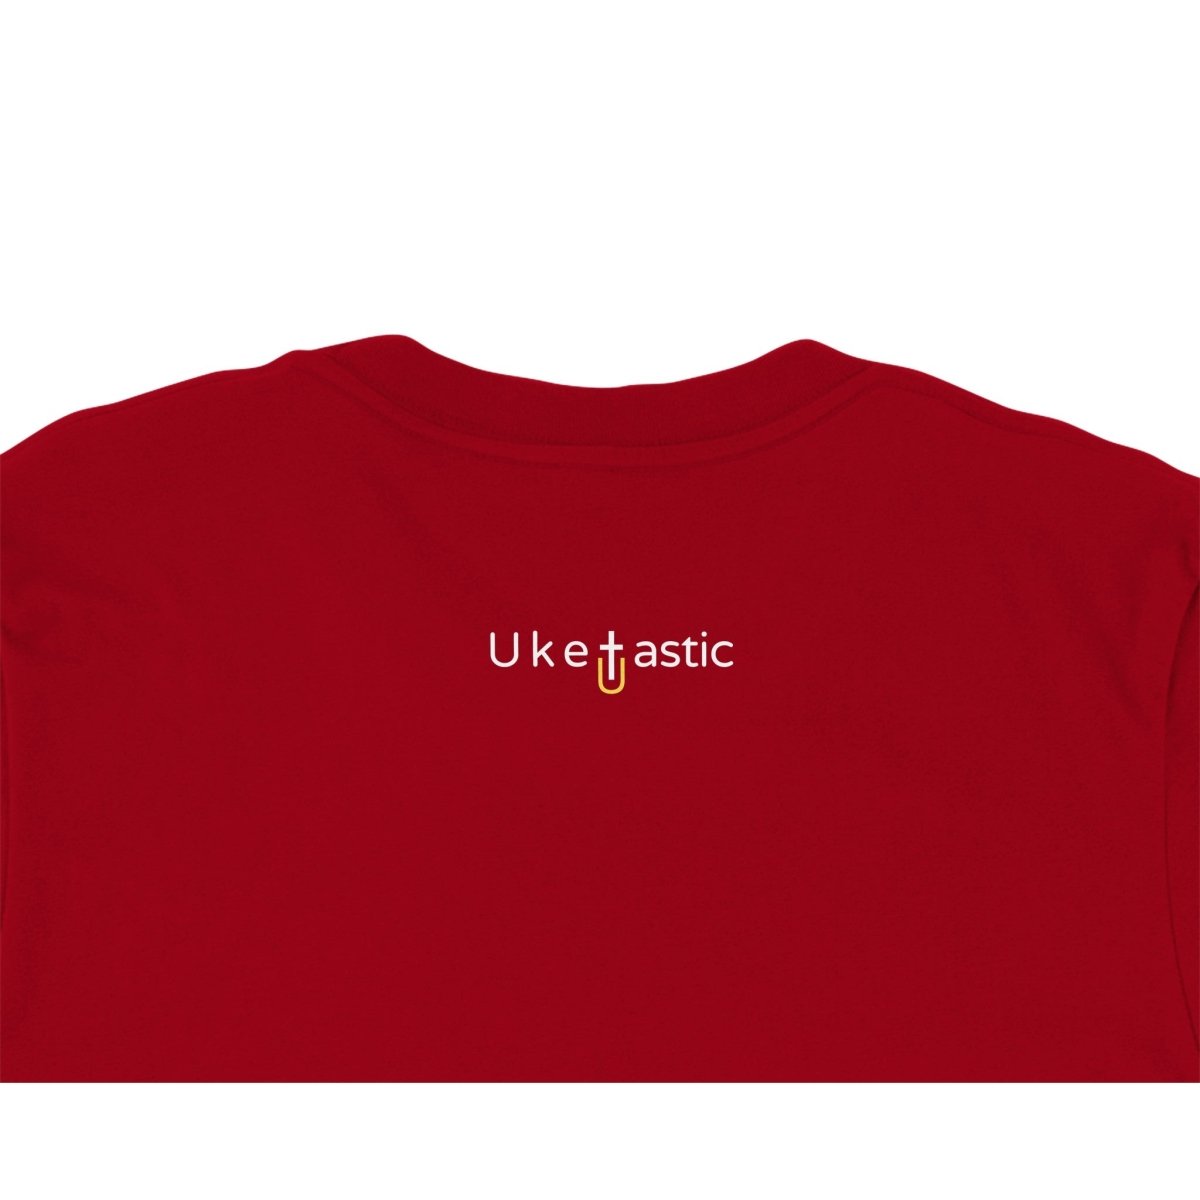 Uke and Conquer - Premium Ukulele Themed T-shirt - Uke Tastic - Navy - Free Delivery - Uke Tastic